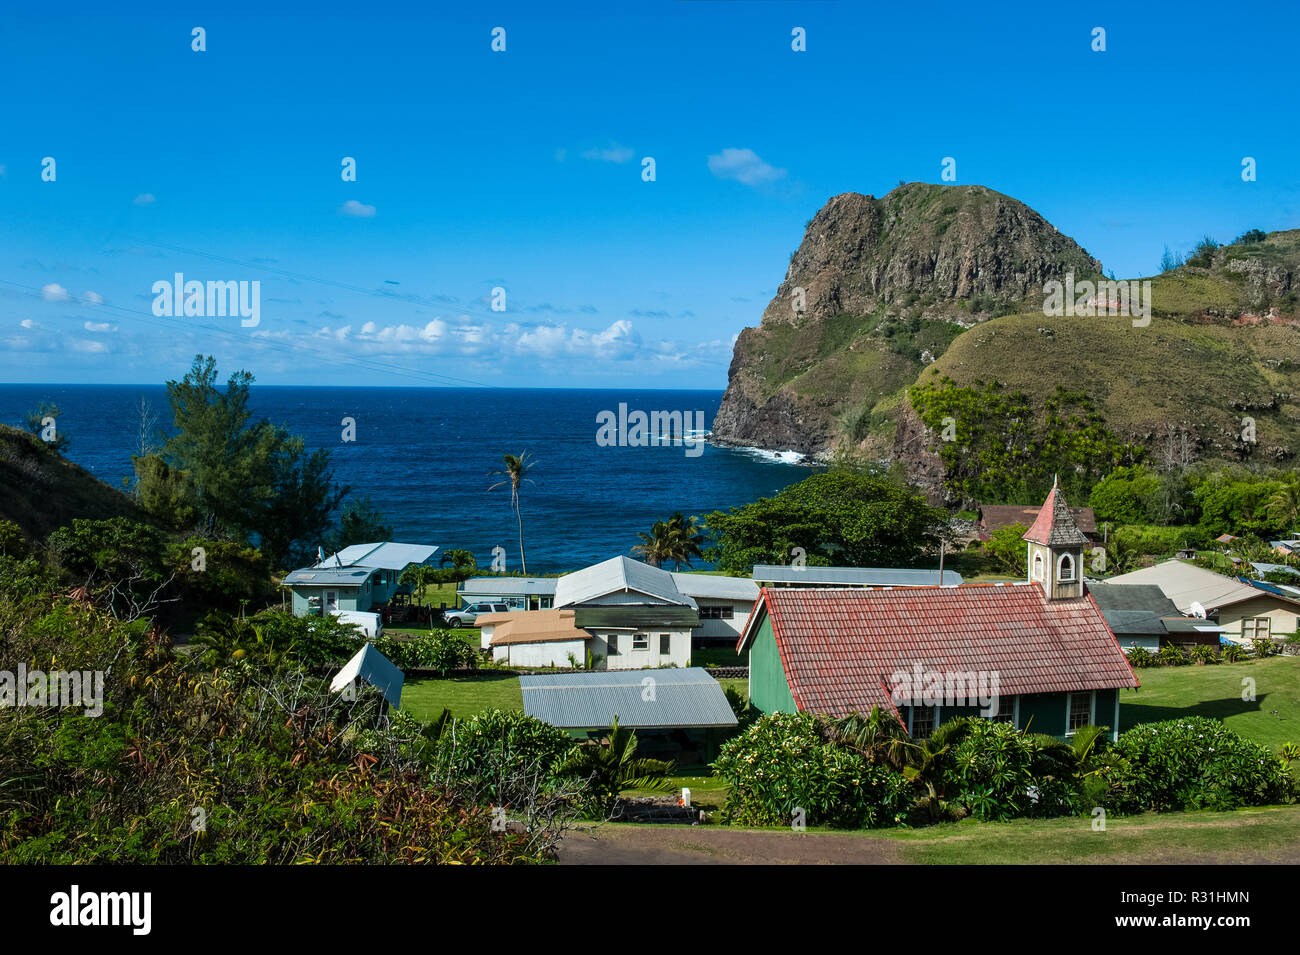 Village at coast, Pu'u Koa'e, Kahakuloa Head, Maui, Hawaii, USA Stock Photo